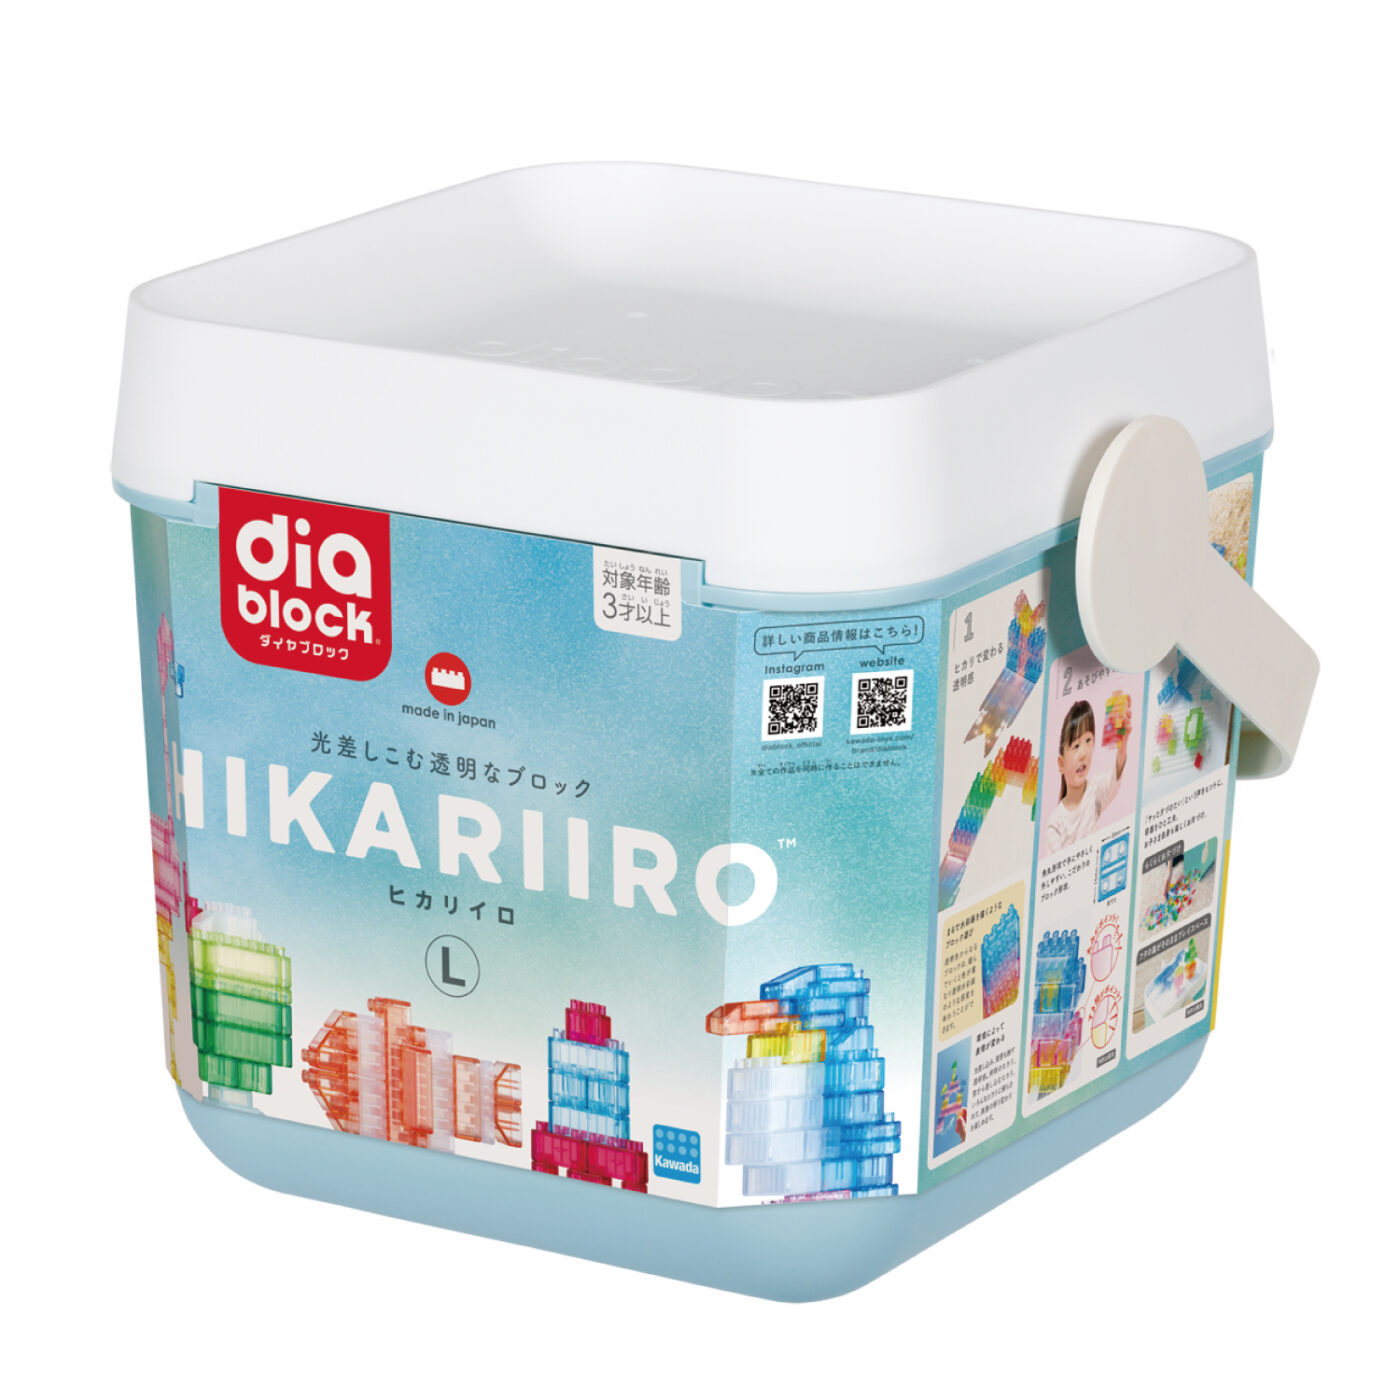 ダイヤブロック HIKARIIRO(ヒカリイロ) Lの商品画像1